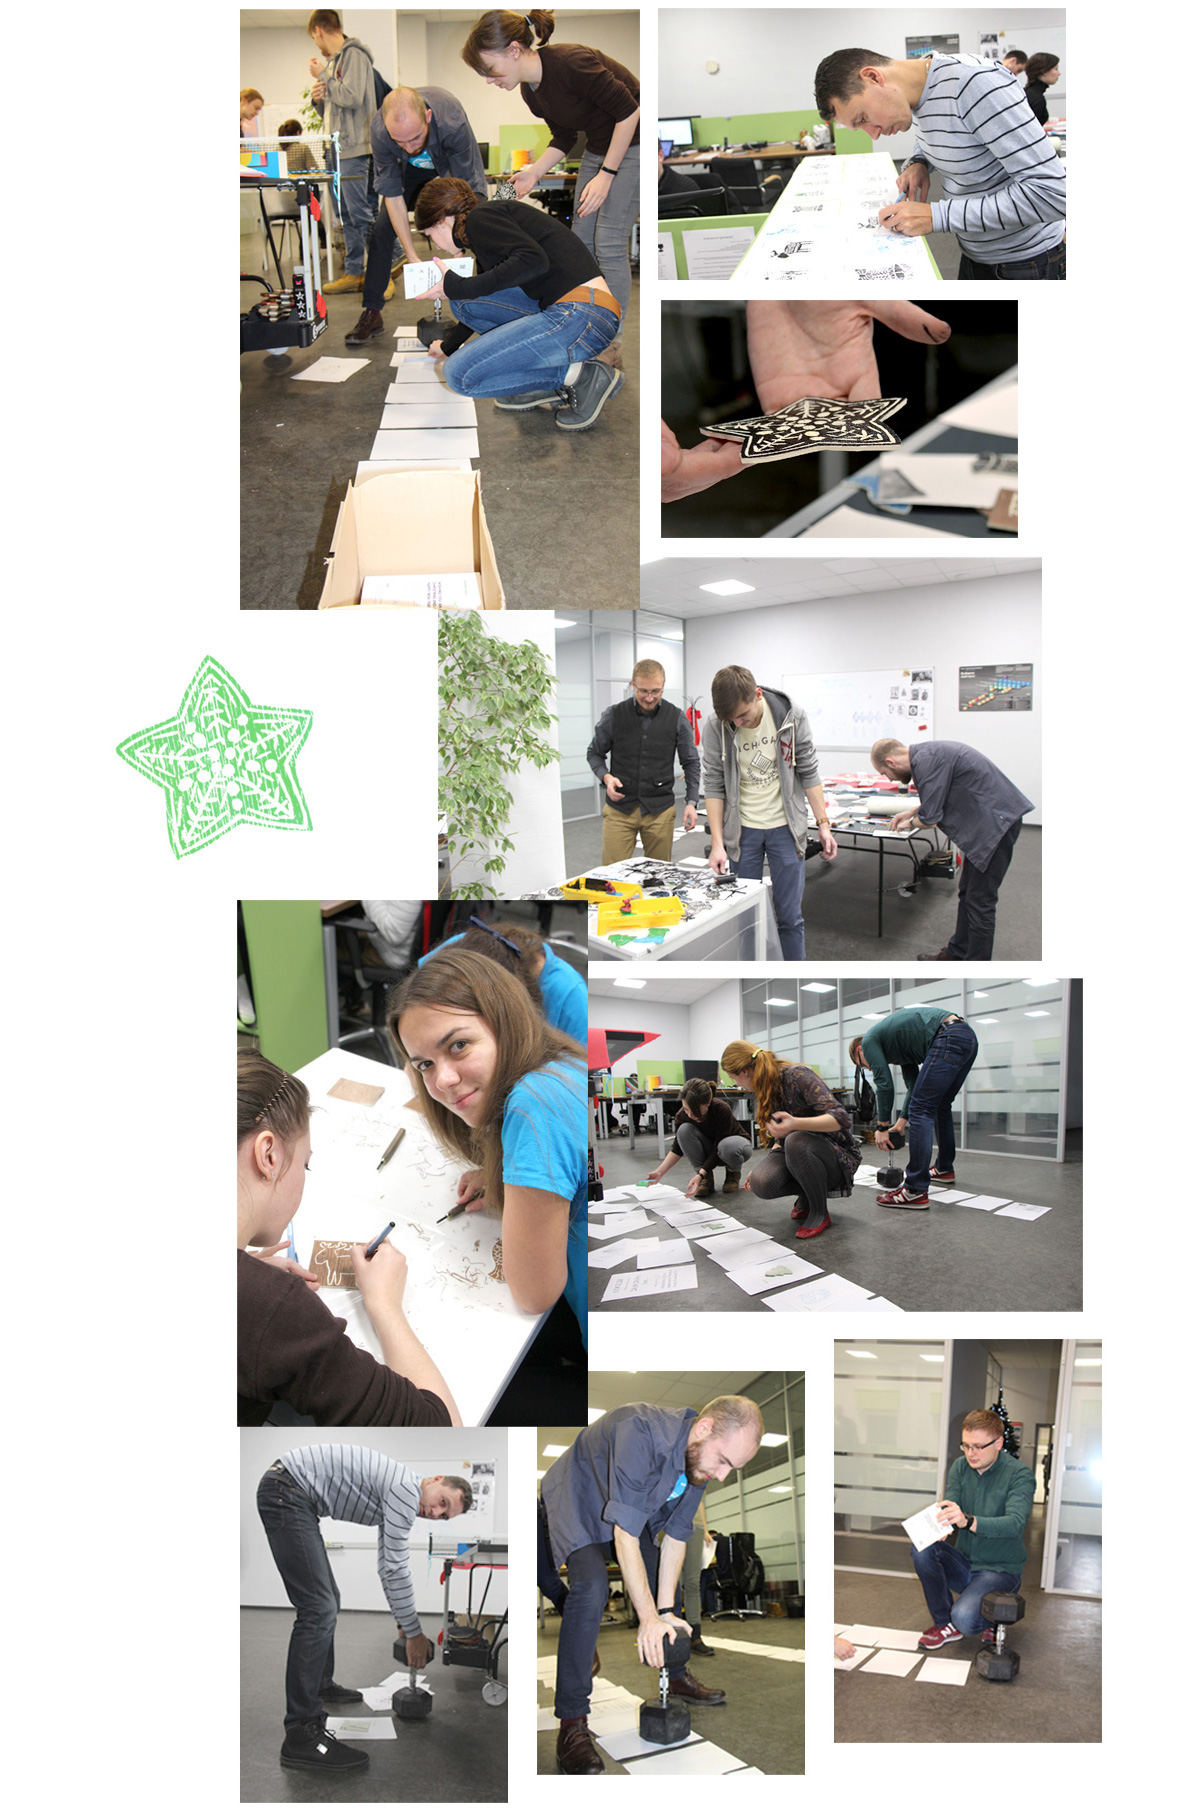 linocut linoryt linoleum engraving postcards greeting Christmas brand TEAMWORK Workshop cut